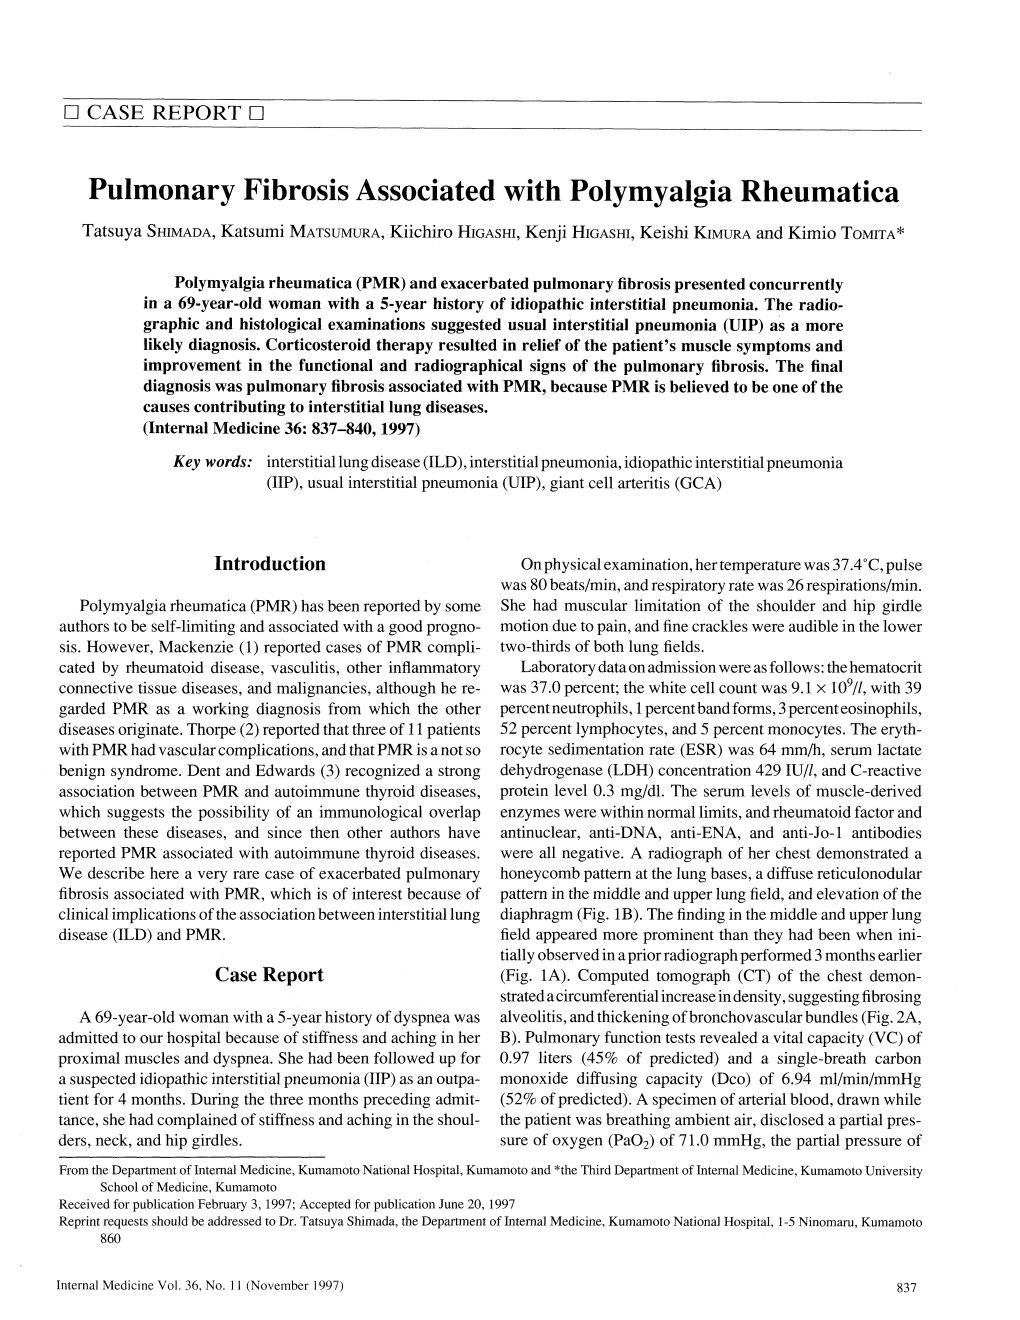 Pulmonary Fibrosis Associated with Polymyalgia Rheumatica Tatsuya Shimada, Katsumi Matsumura, Kiichiro Higashi, Kenji Higashi, Keishi Kimura and Kimio Tomita*